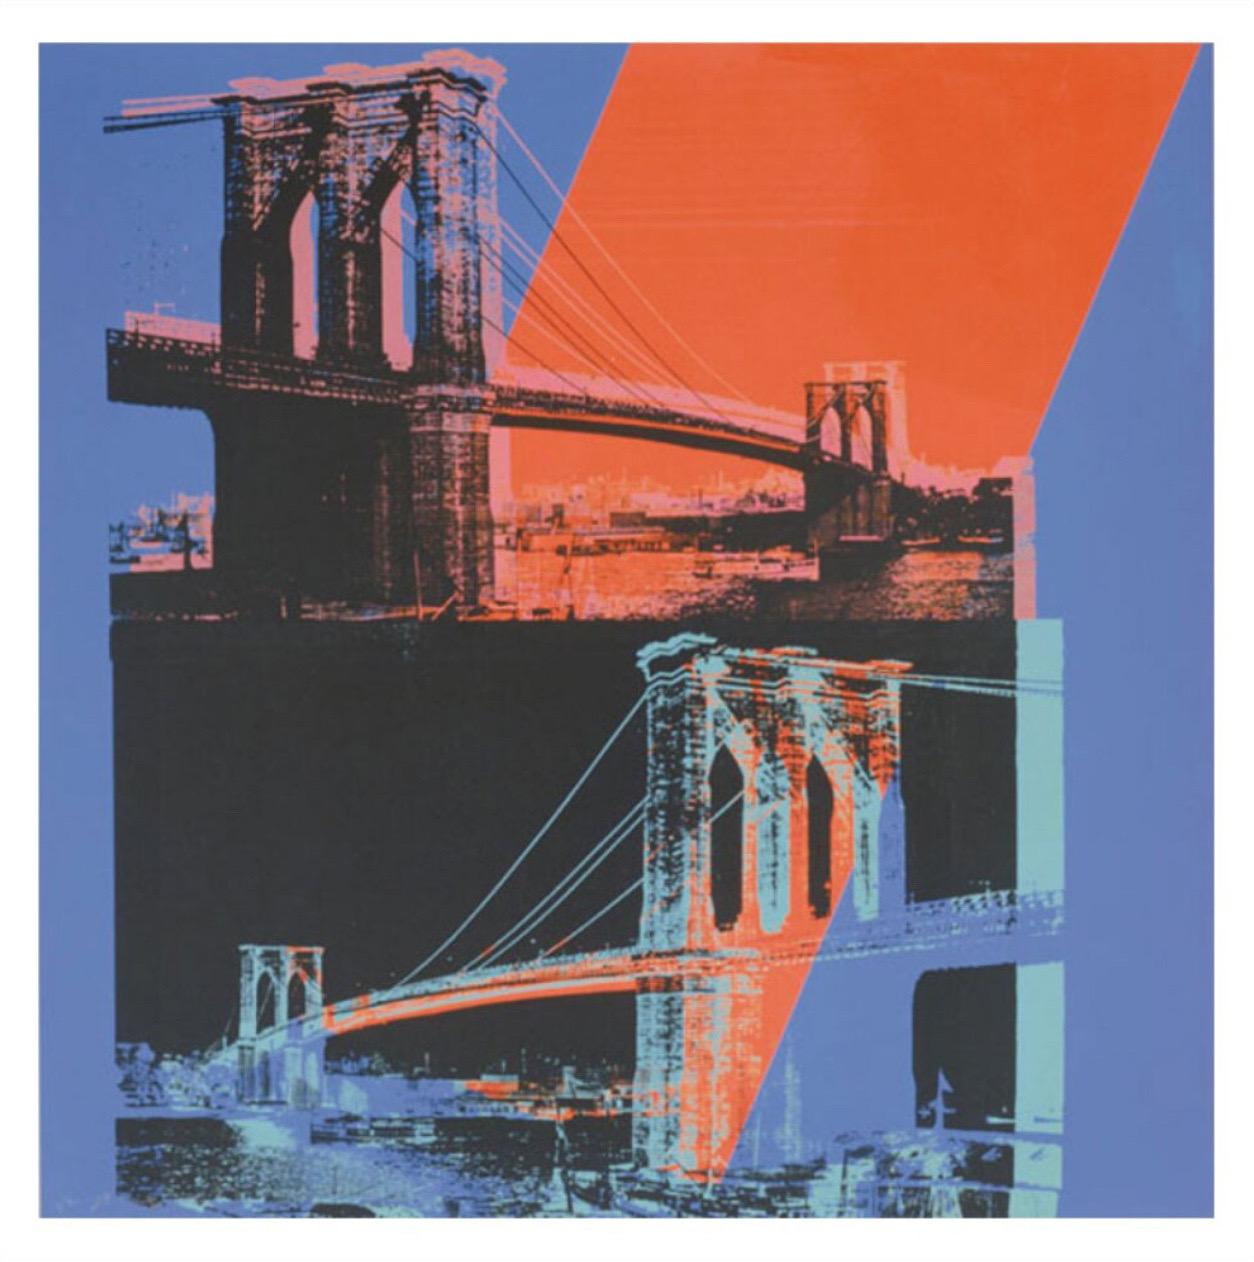 Andy Warhol, Brooklyn Bridge, 1983 (pink, rot, blau)

Mattes 250 g/m² konserviertes Digitalpapier

Bildgröße 90 × 90 cm (35,43 x 35,43 Zoll) 

Papierformat 97 × 97 cm (38,19 x 38,19 Zoll) 

Dieser Druck wird mit einem Rand versehen, der den Namen